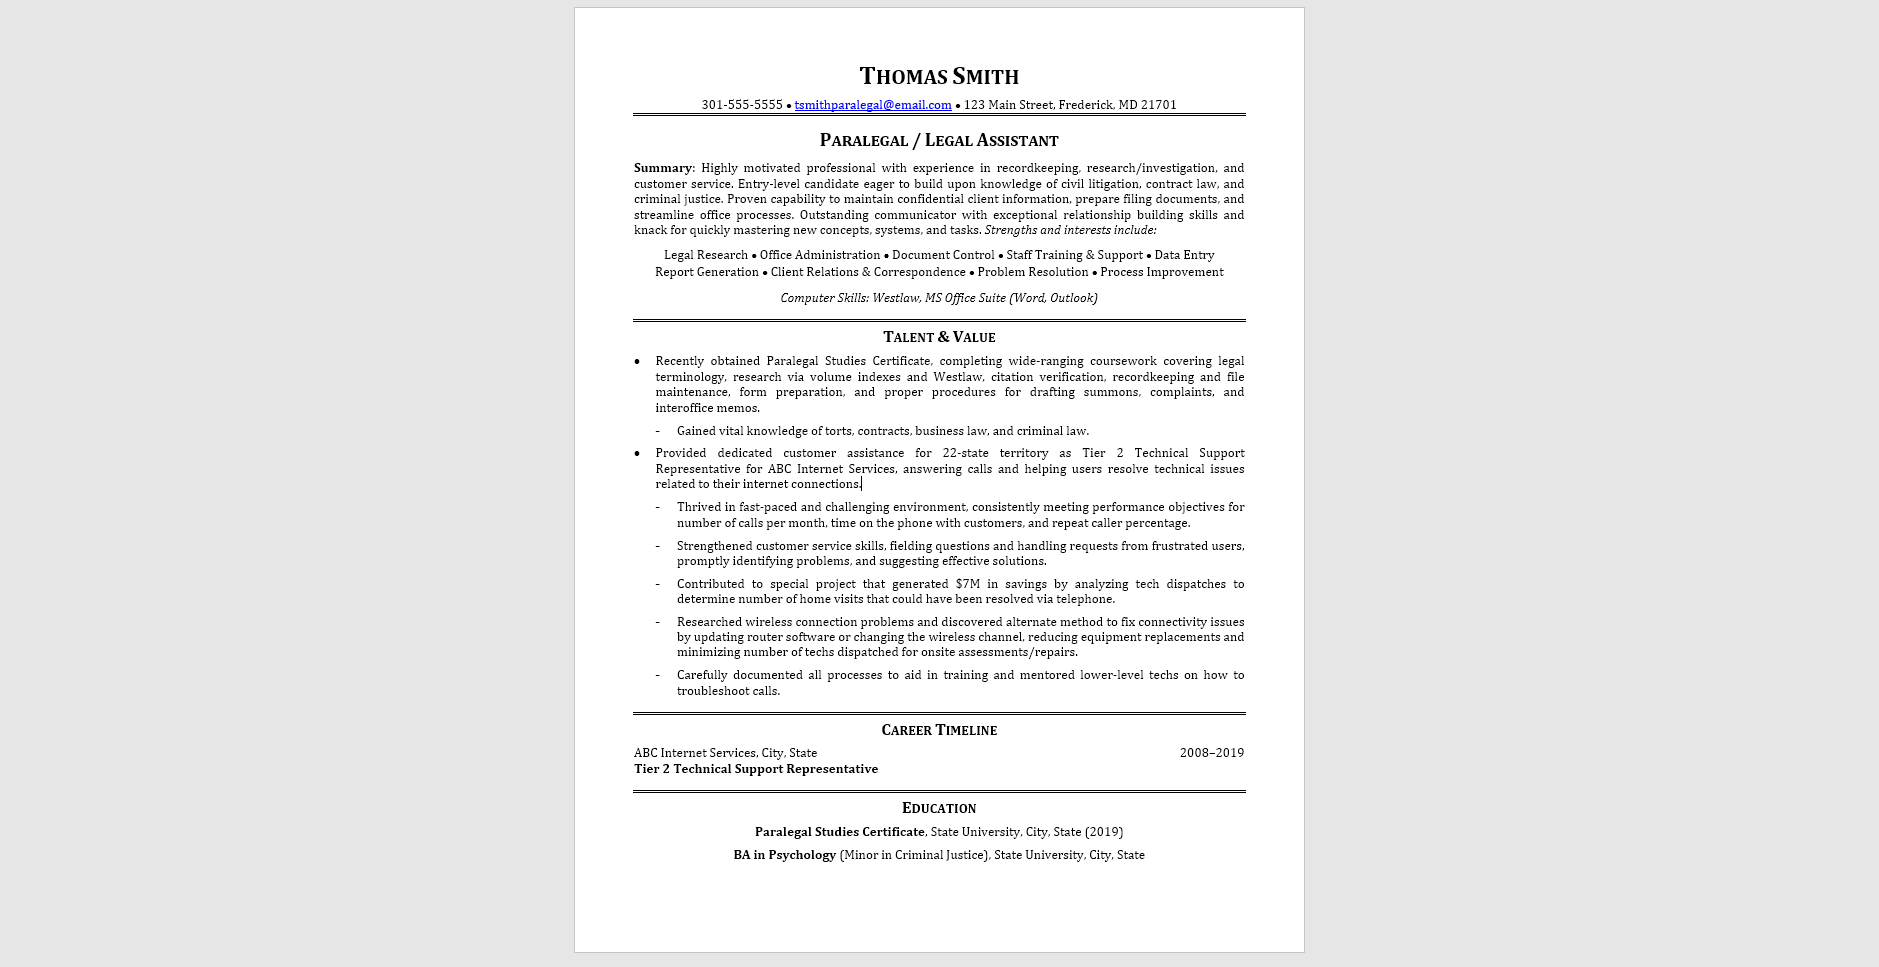 Sample resume focused on transferable skills